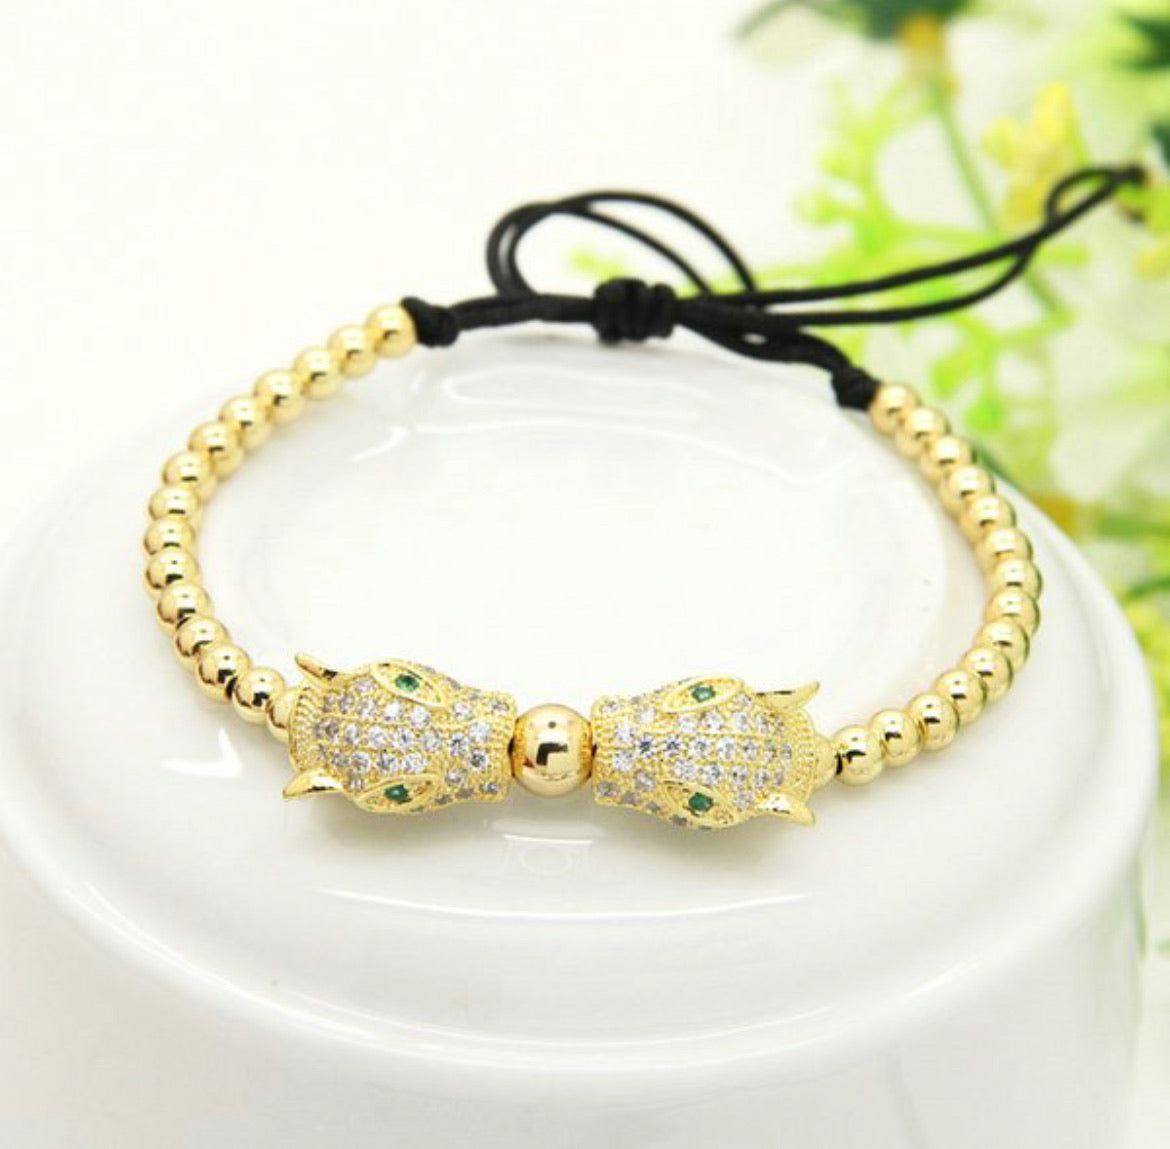 Gold color jaguar wow bracelet for women - Shaze - 1746462